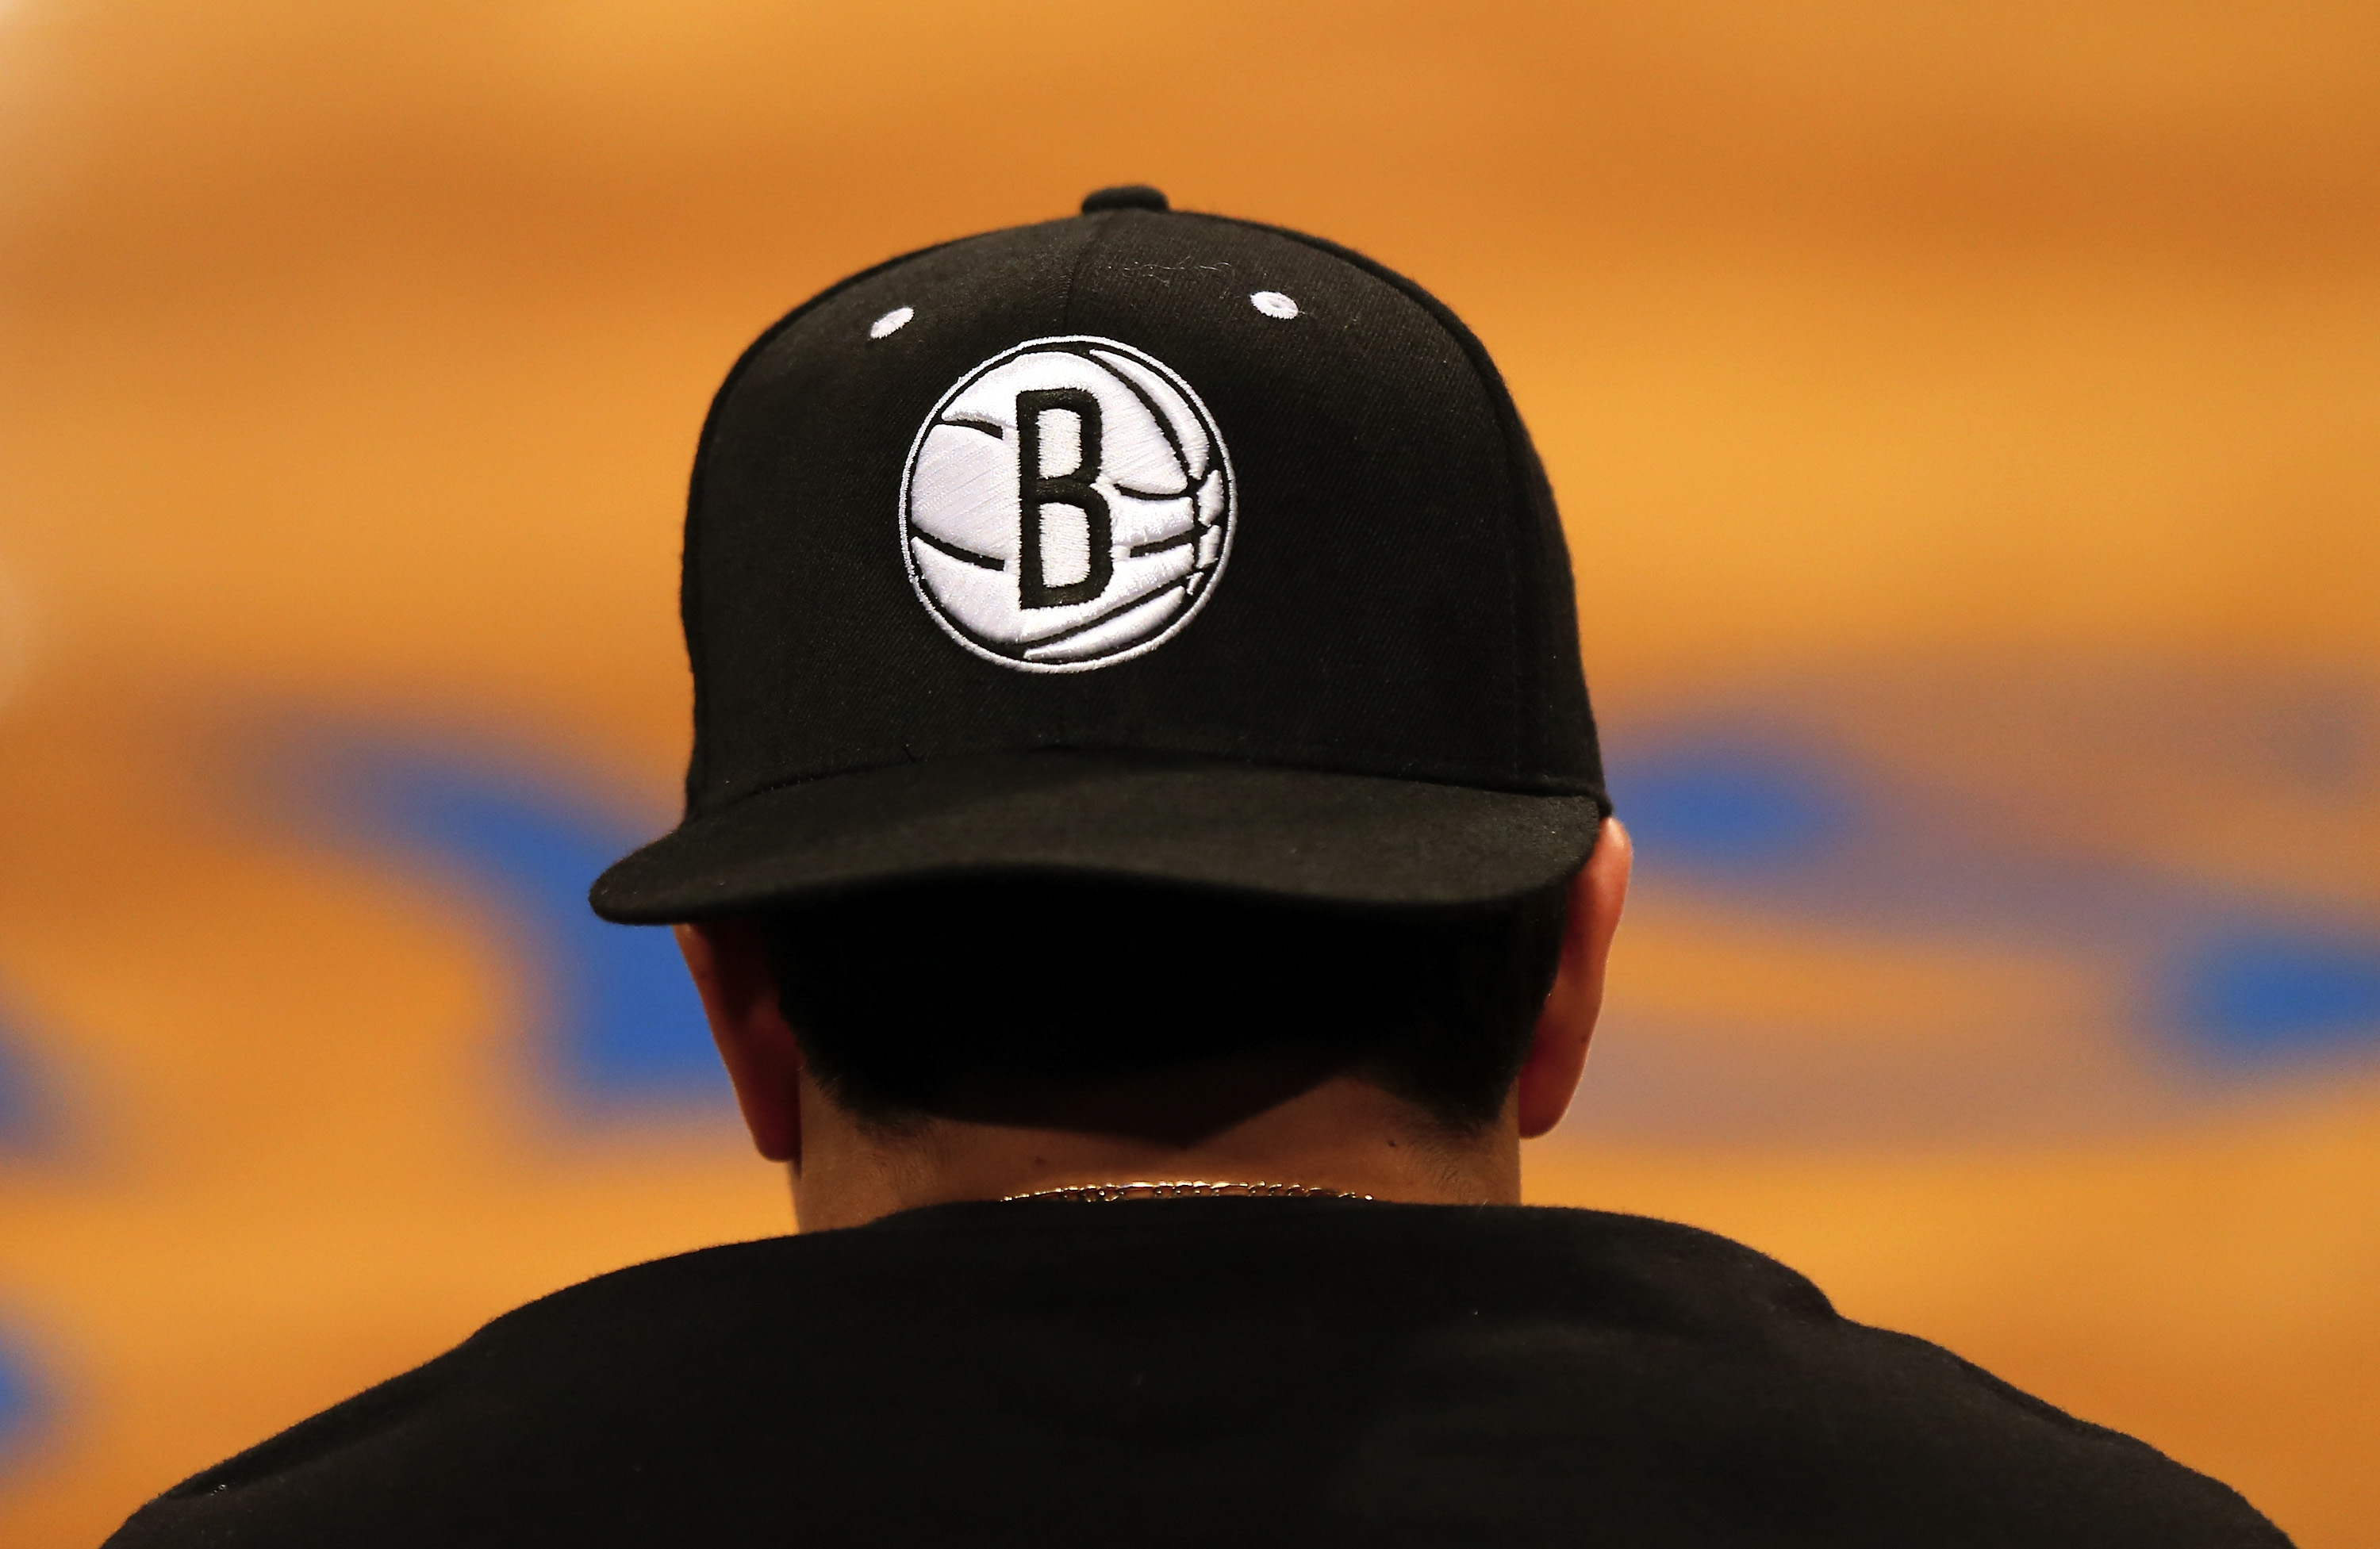 Logotipo do Brooklyn Nets em um boné durante o jogo contra o Washington Wizards durante uma partida da pré-temporada no Barclays Center em Nova York (Elsa/Getty Images)